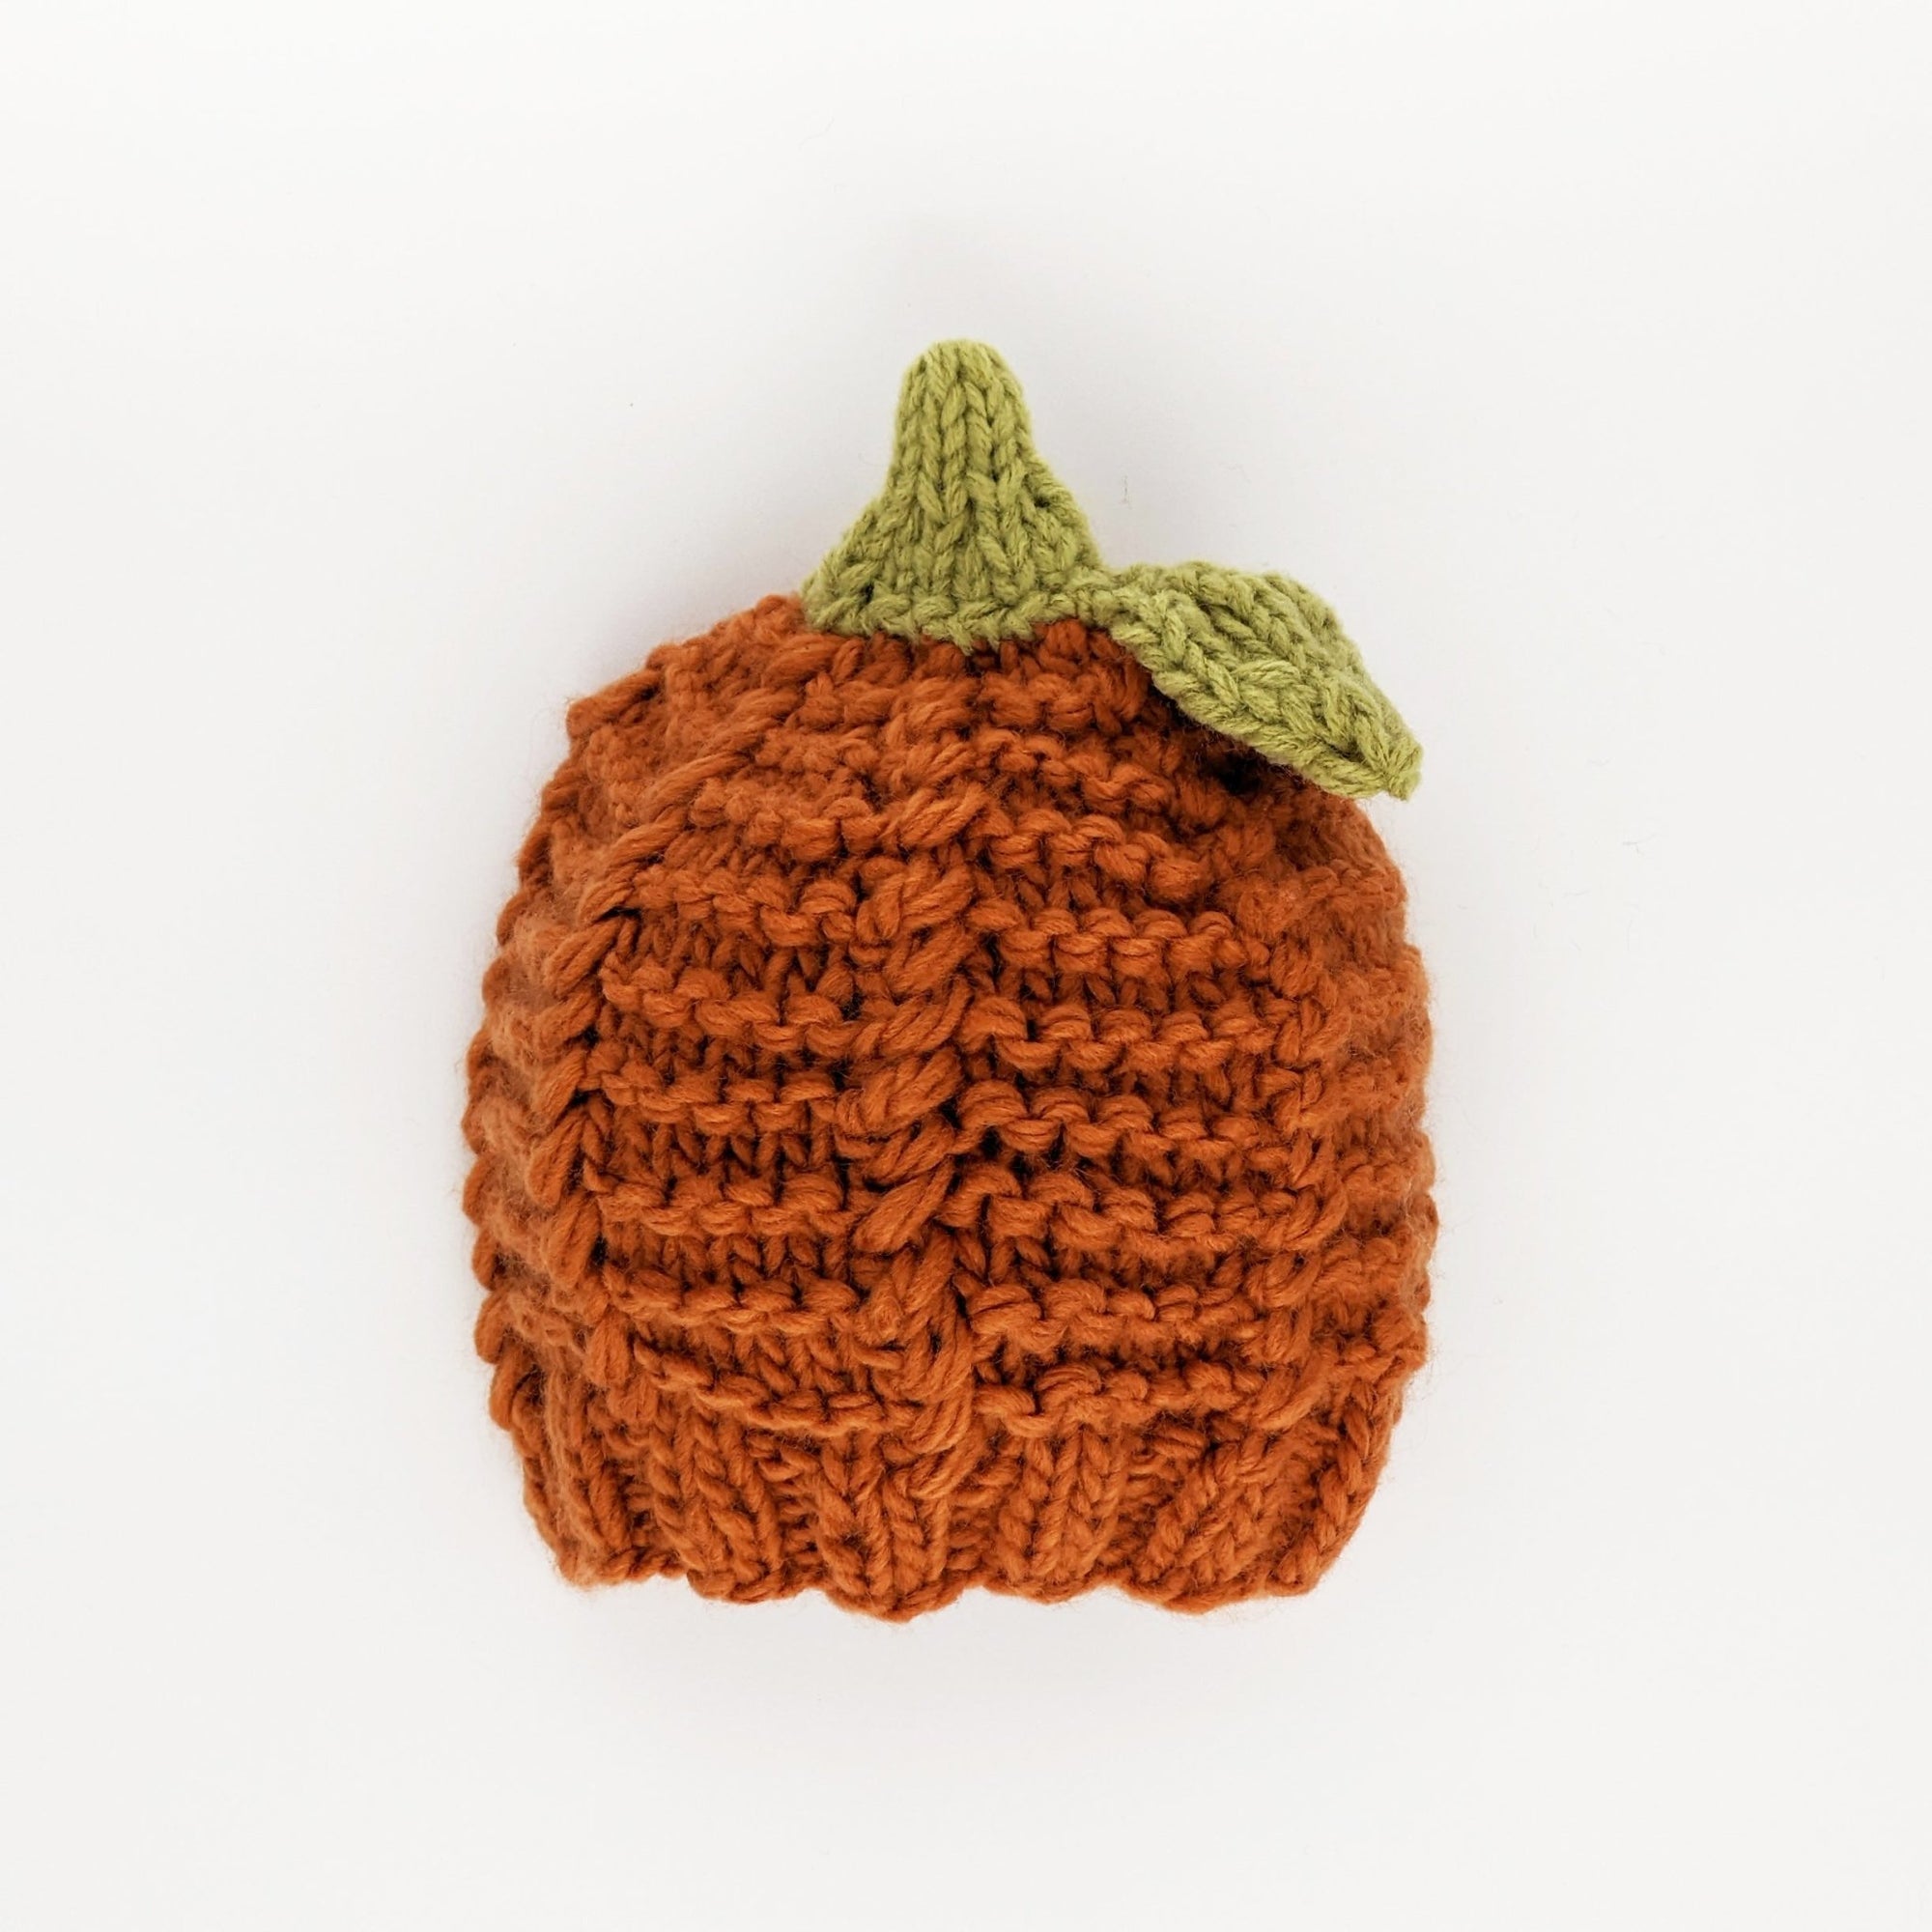 Great Pumpkin Beanie Hat due Jul/Aug - Beanie Hats